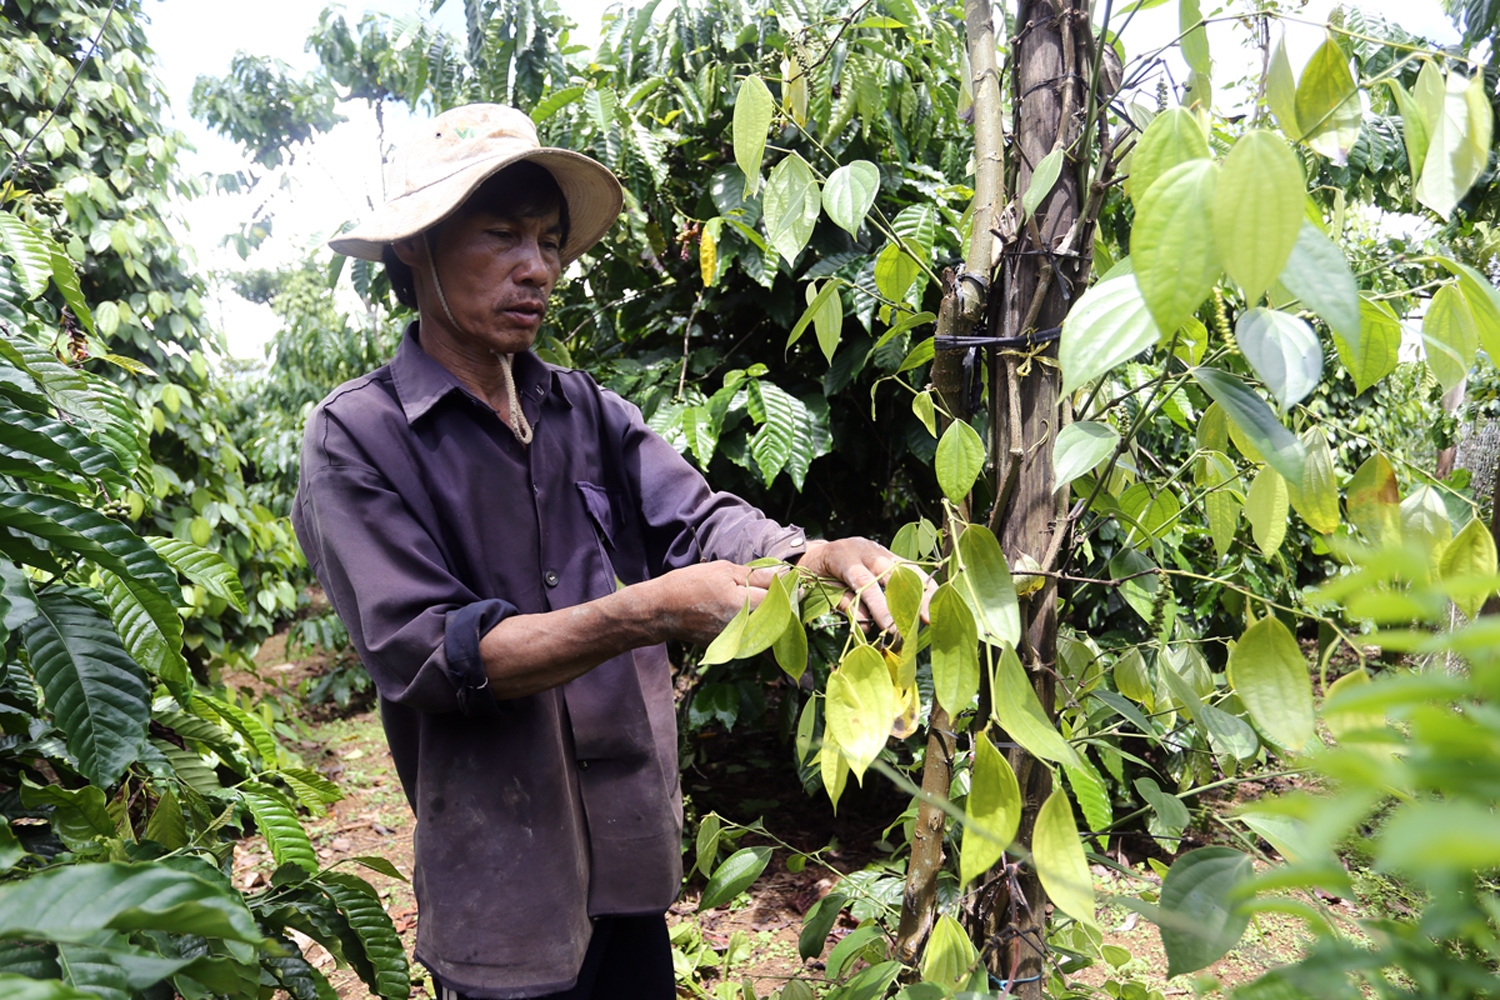 Tiêu trồng xen trong vườn cà phê ở H.Bảo Lâm bị bệnh chết chậm nhưng chưa có thuốc đặc trị